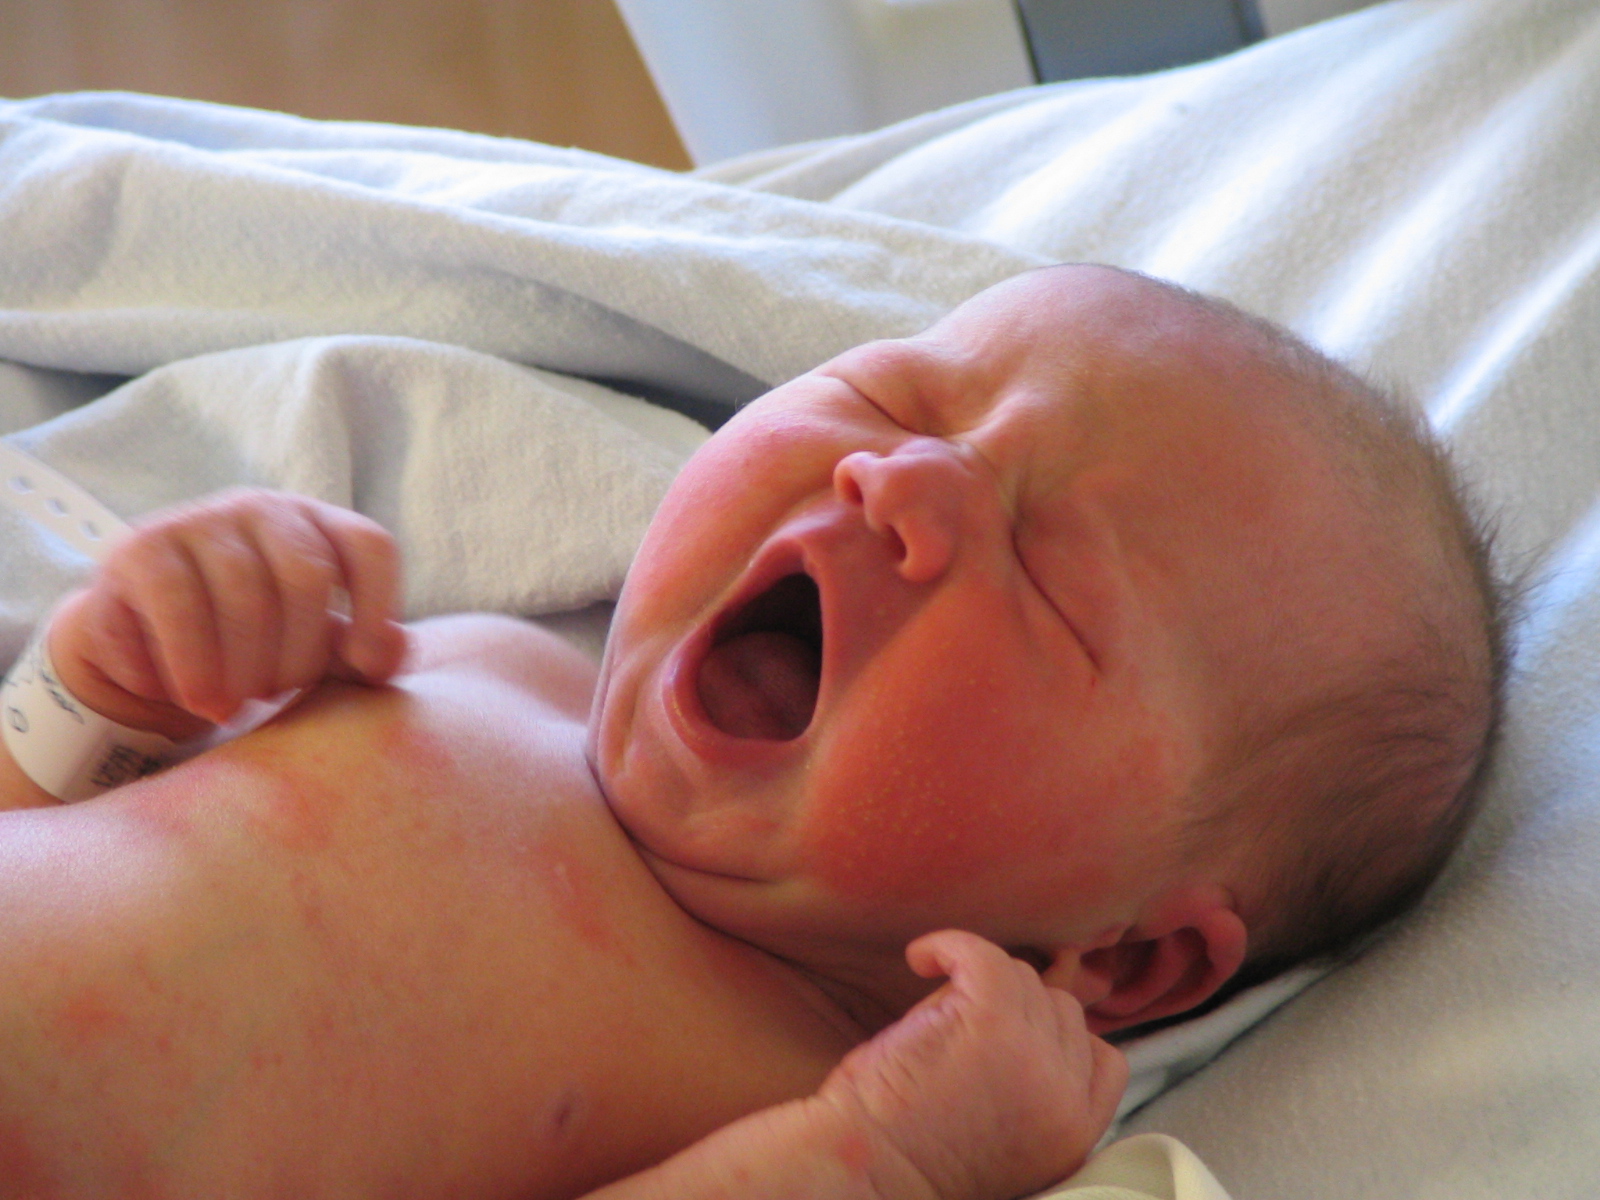 Токсическая эритема новорожденных